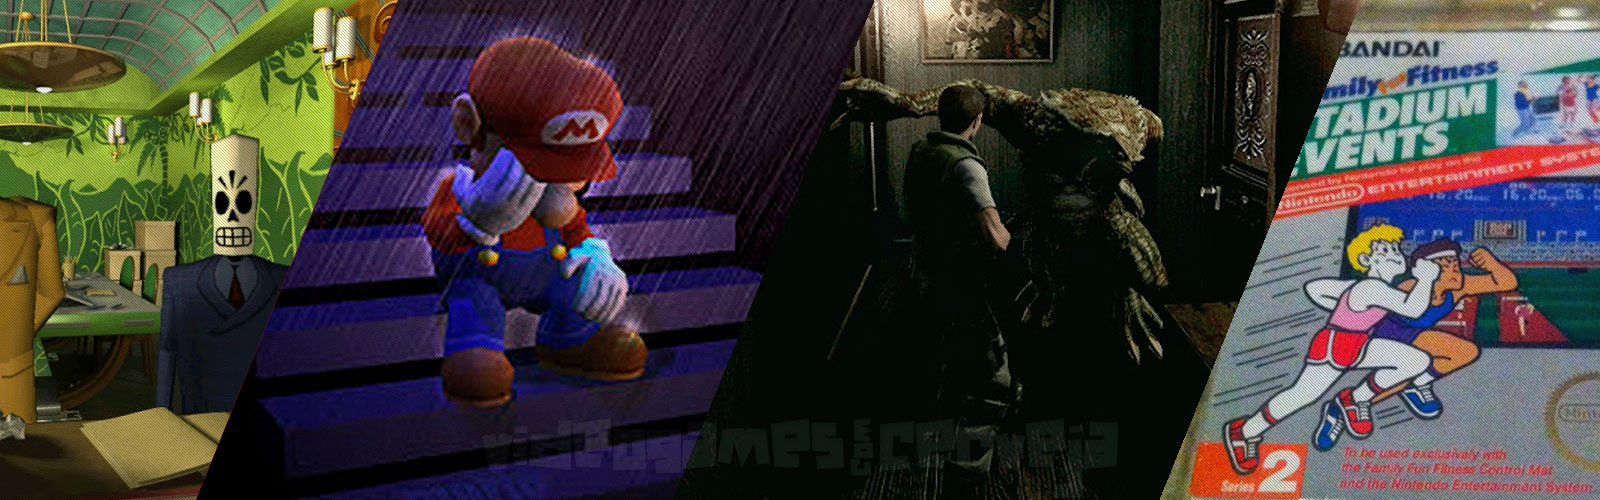 Resumo da semana - Nintendo abandona o Brasil, Razer lançará console Android, Resident Evil HD já está em pré-venda e mais.. Cover